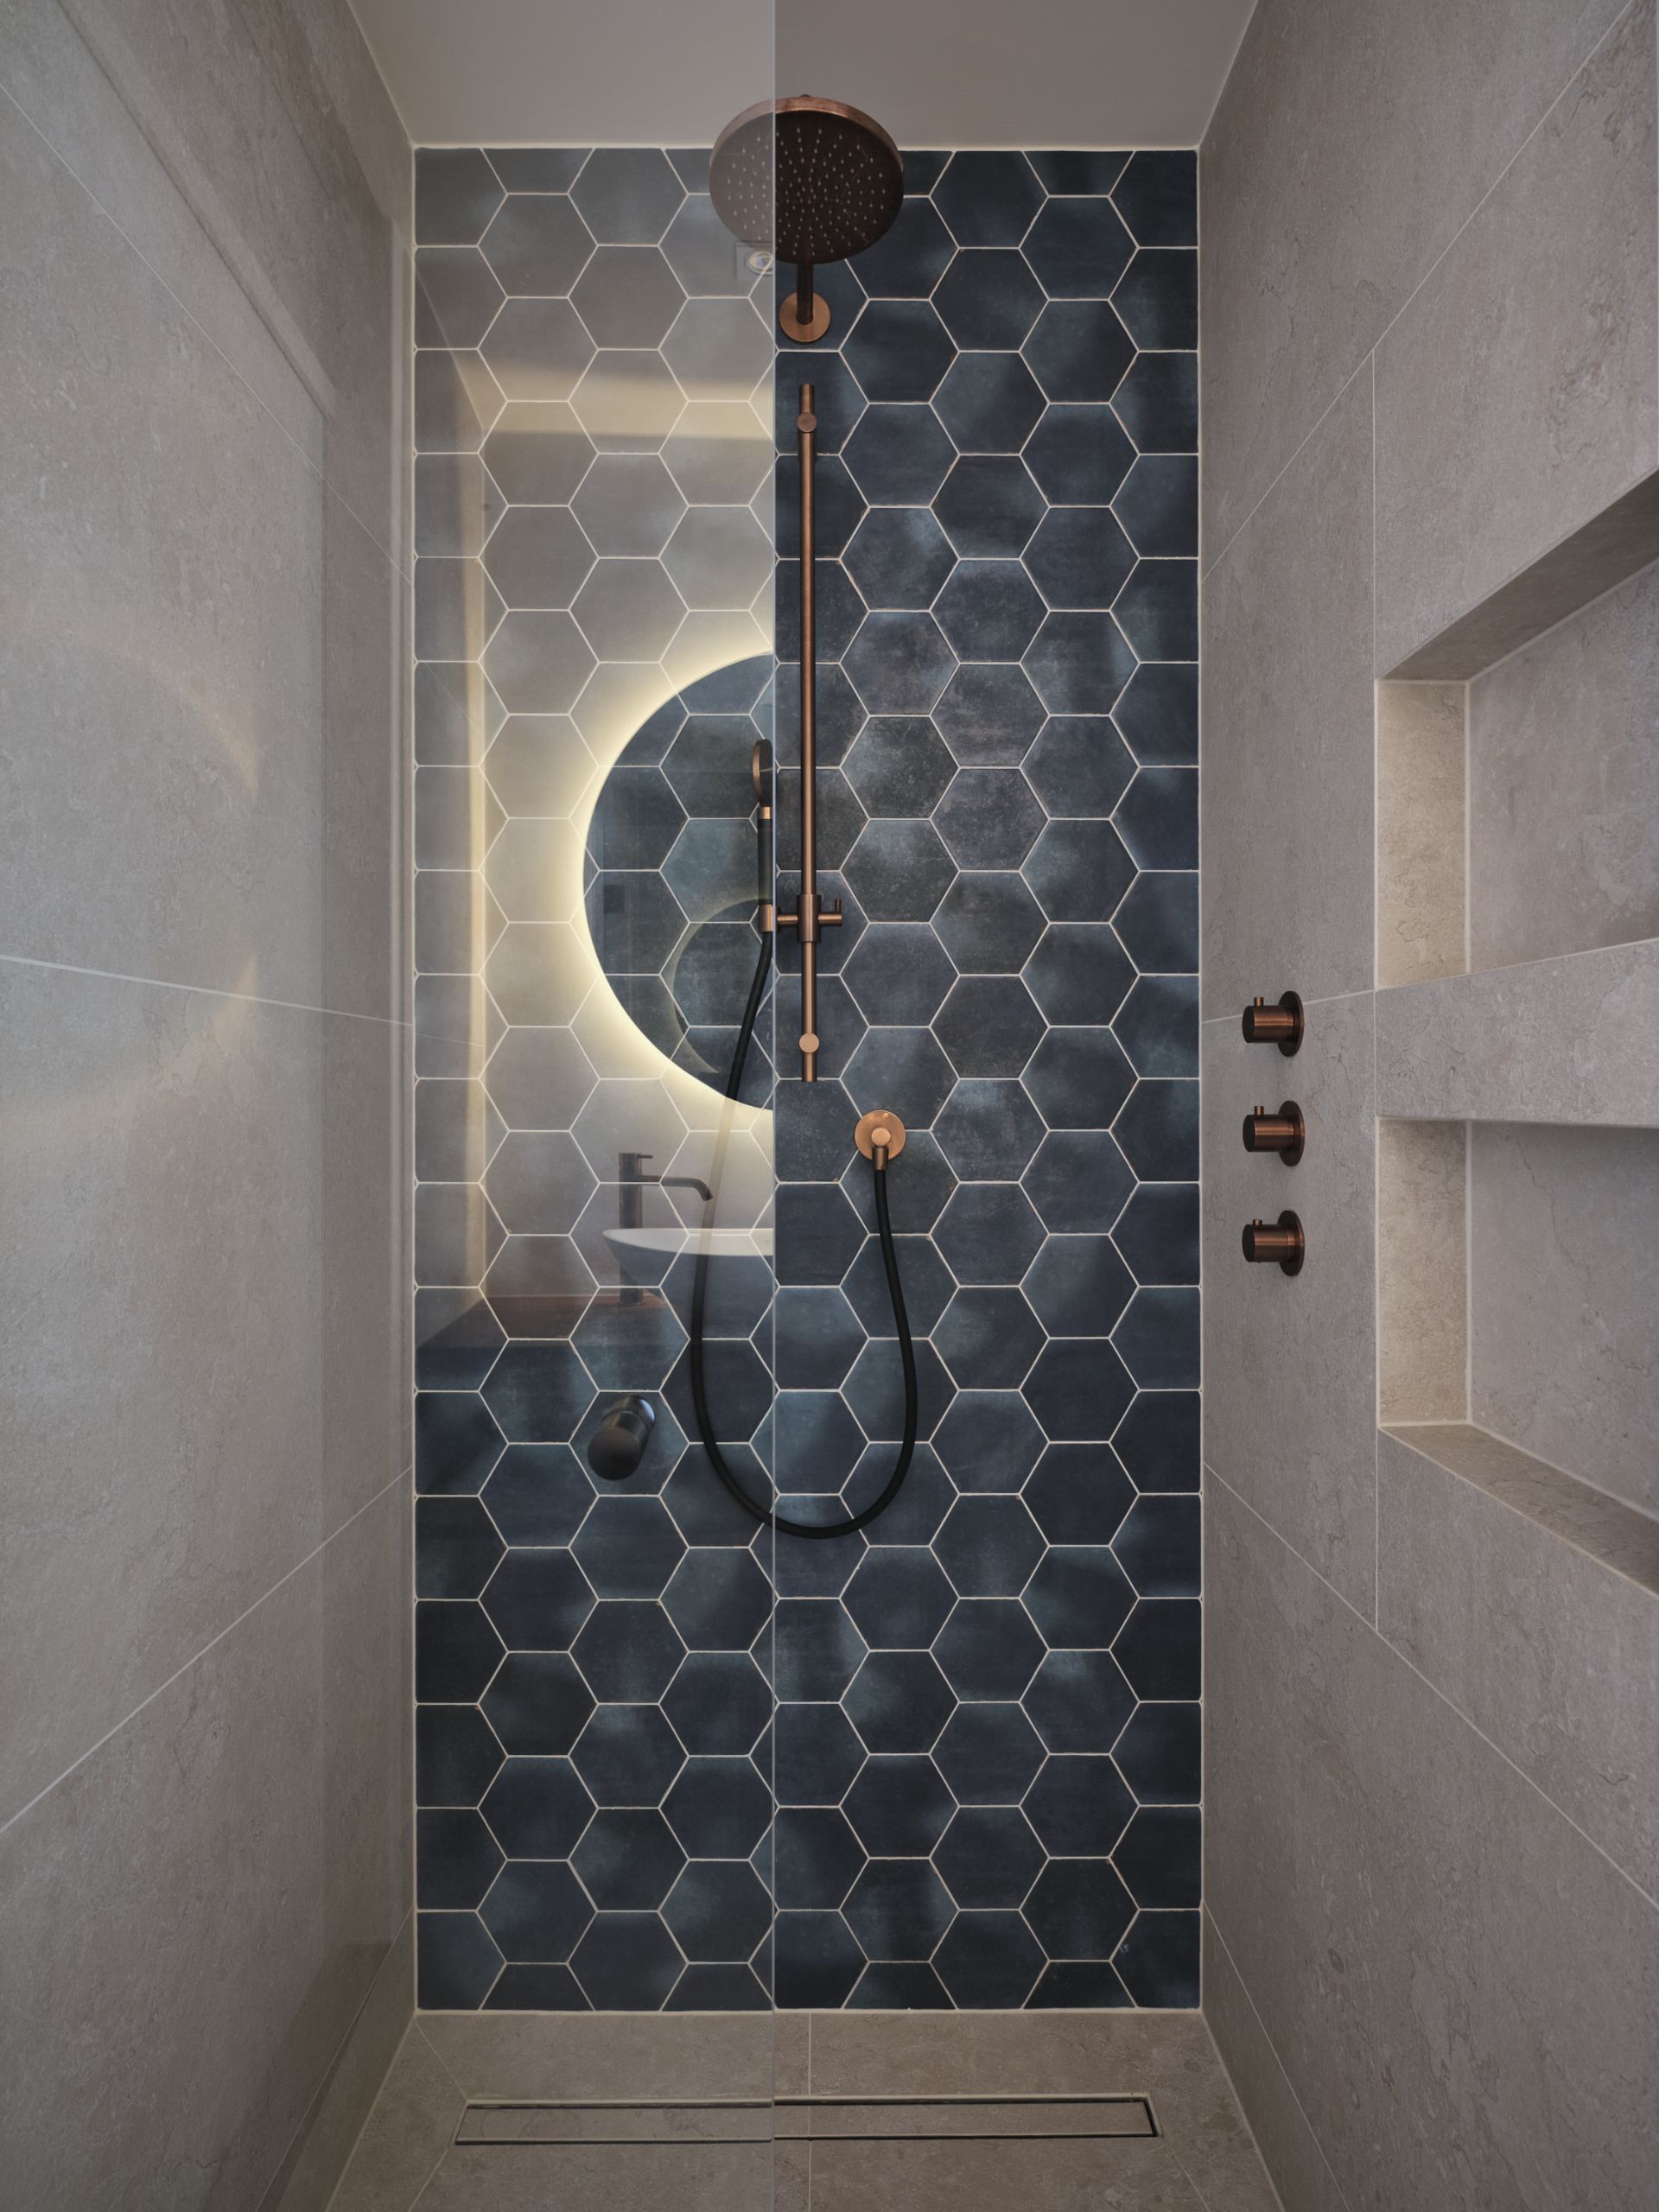 Foto: een frisse look met blauwe hexagon tegels    eerste kamer badkamers   001